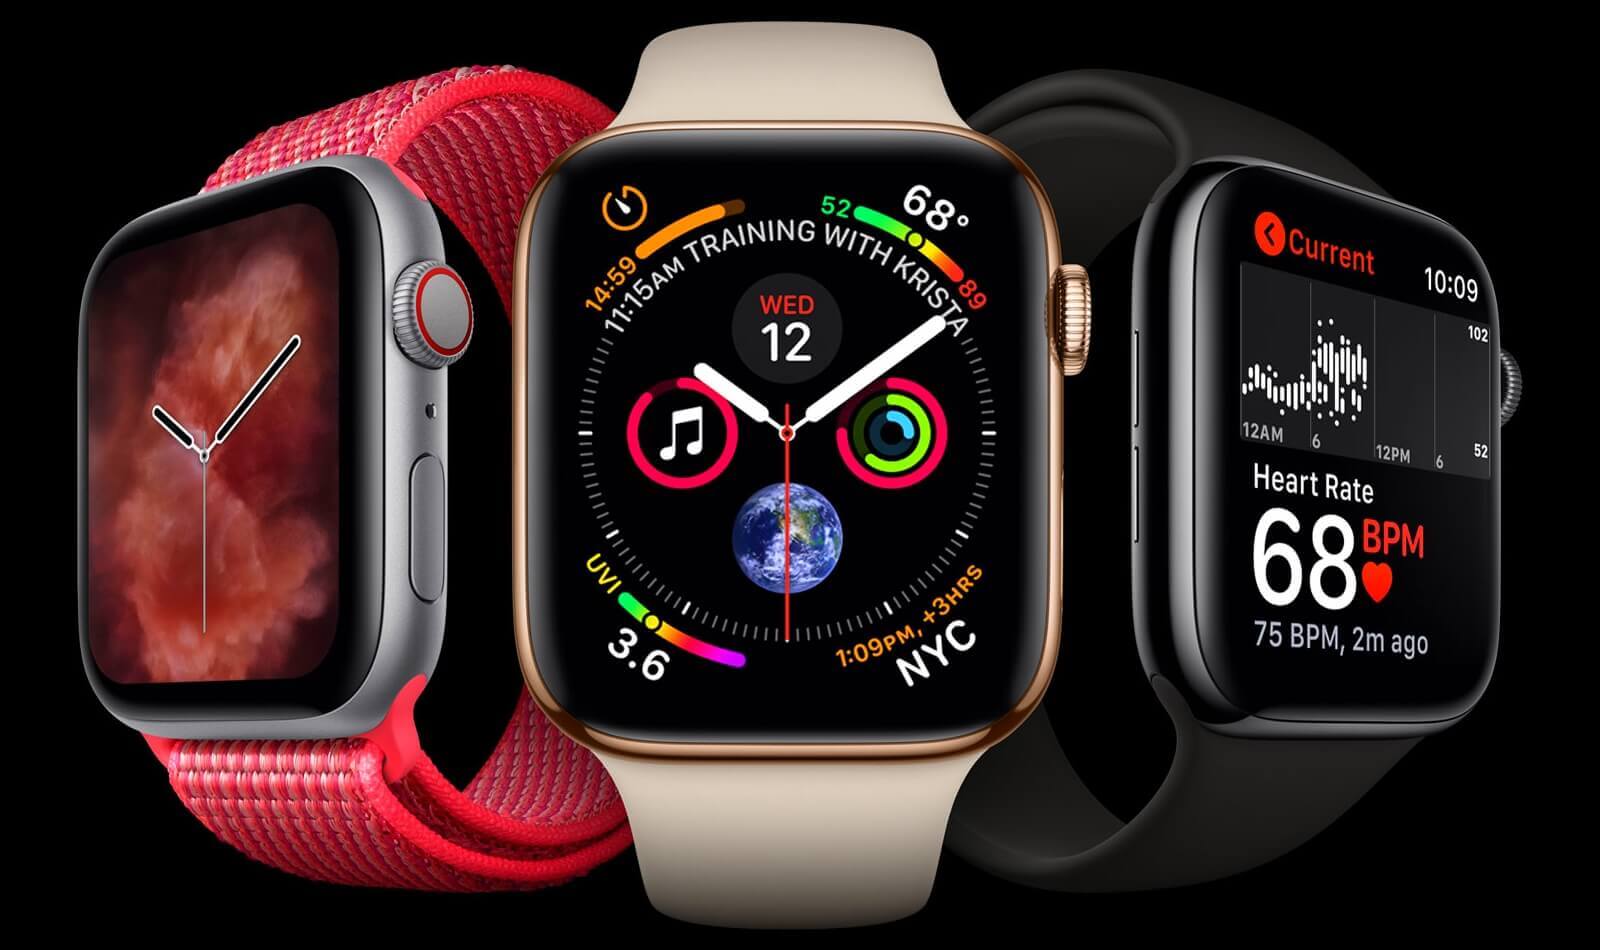 Функции снятия ЭКГ в Apple Watch Series 4 не была одобрена FDA